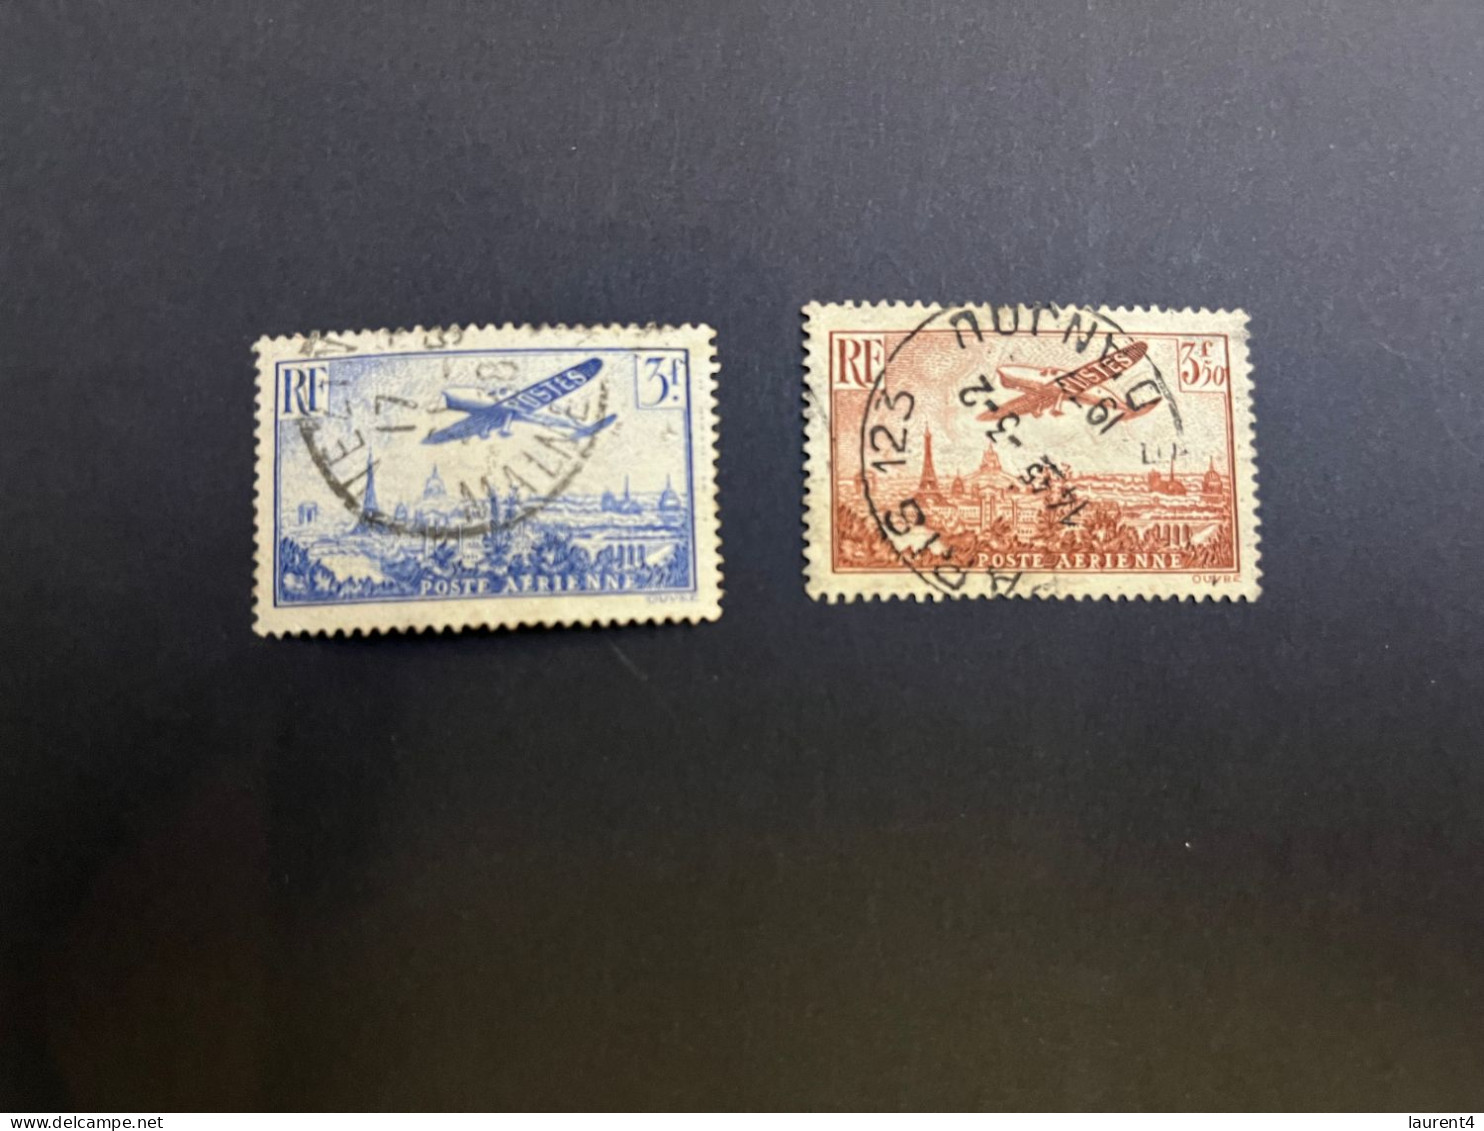 20-4-2024 (stamp) 2 Used Stamp - FRANCE - Poste Aerienne (3 Fr & 3,50 Fr) - 1927-1959 Matasellados